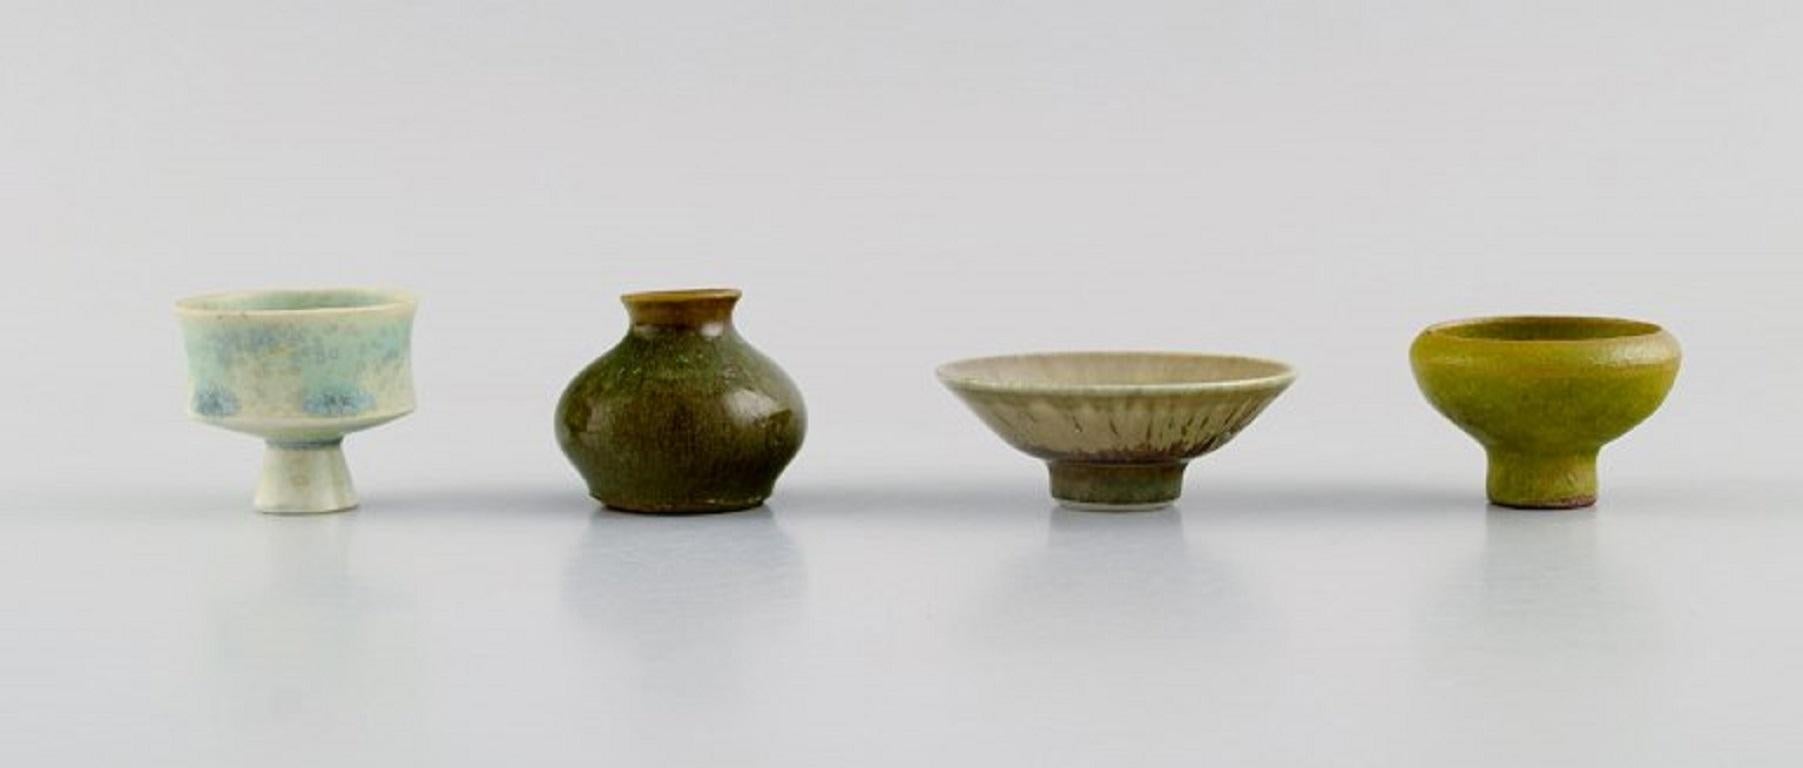 Céramique de studio suédoise. Quatre vases miniatures uniques en grès émaillé. 
Fin du 20e siècle.
Le bol mesure : 5.7 x 2,3 cm.
Le plus grand vase mesure : 3.7 x 3,5 cm.
En parfait état.
Estampillé.